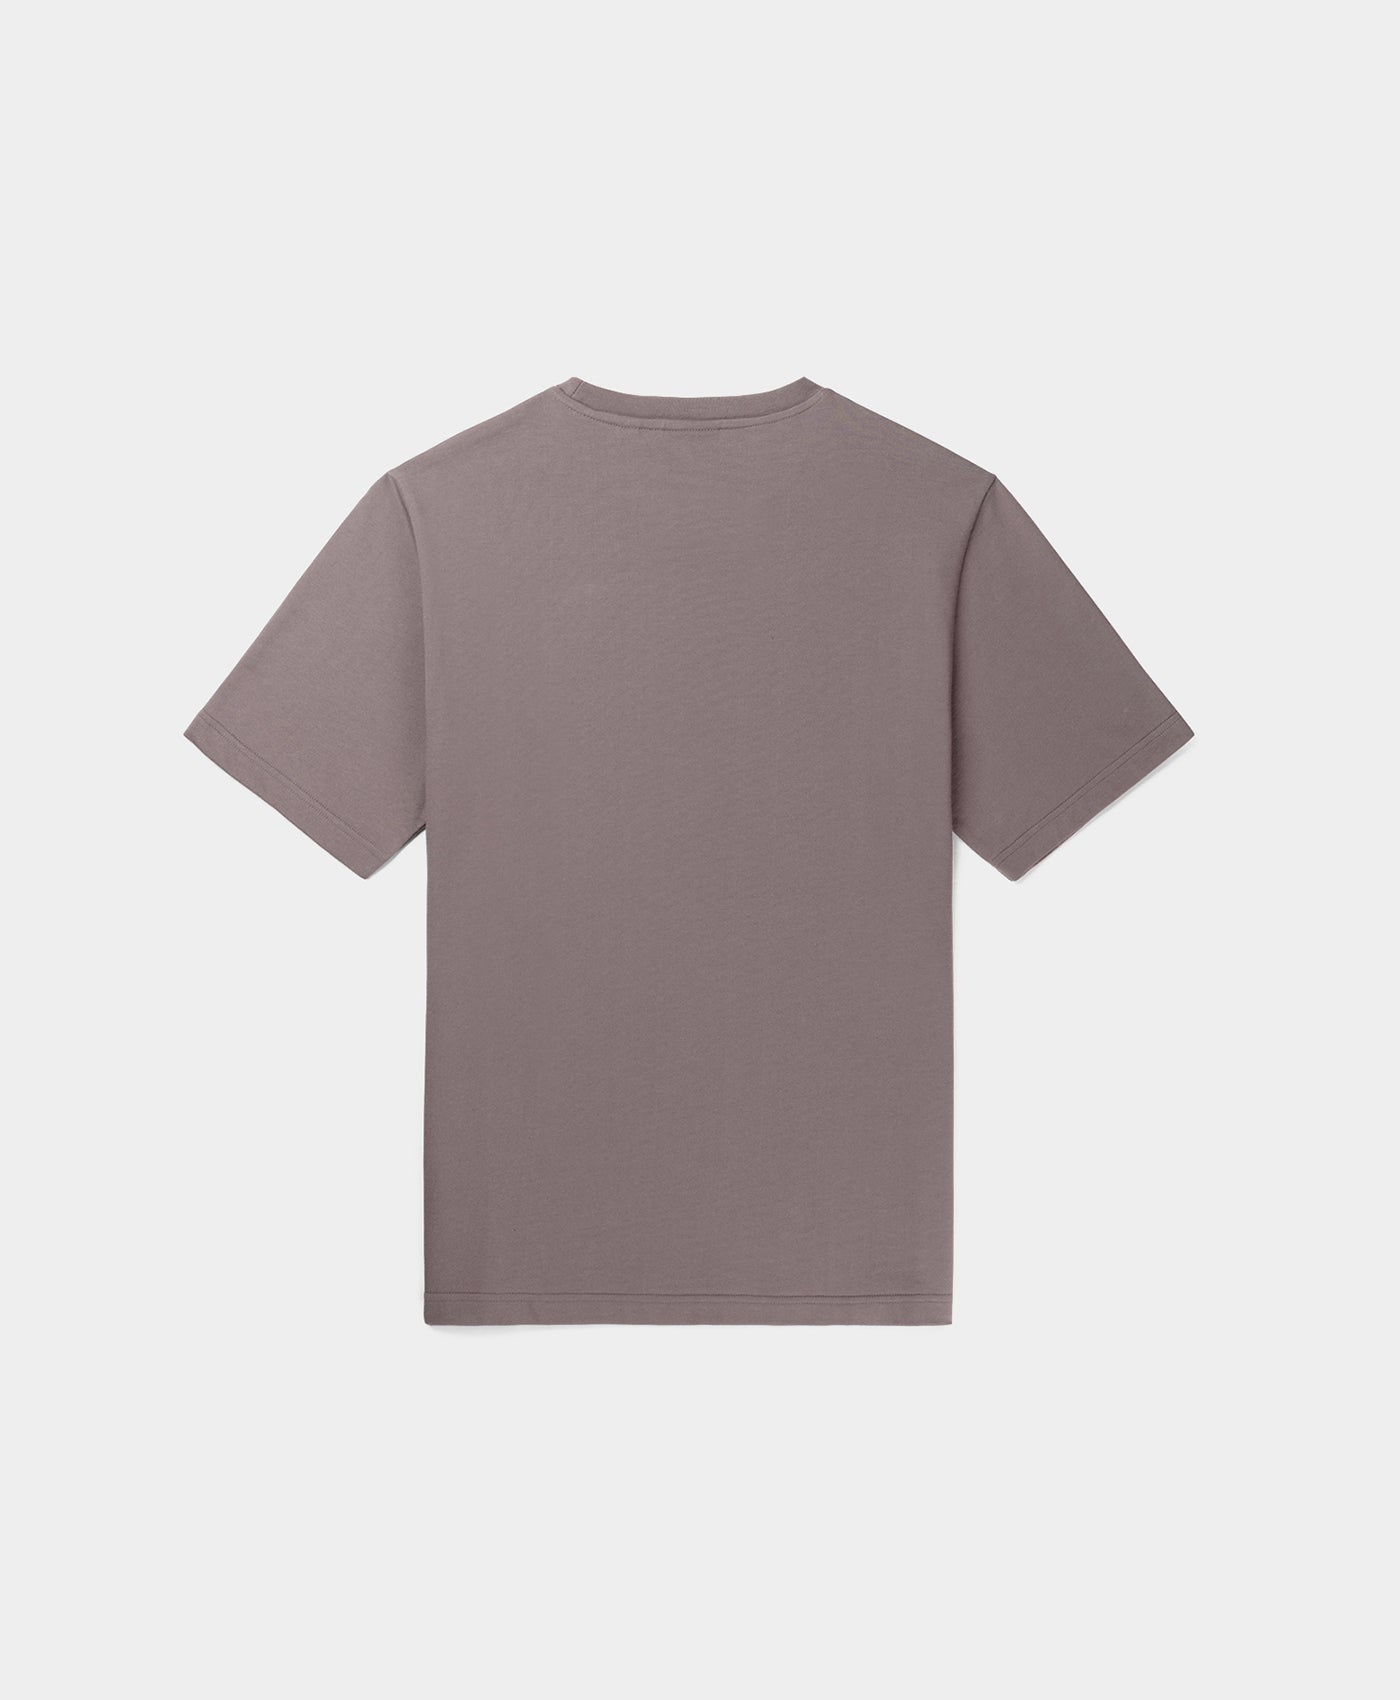 DP - Shark Grey Refarid T-Shirt - Packshot - Rear